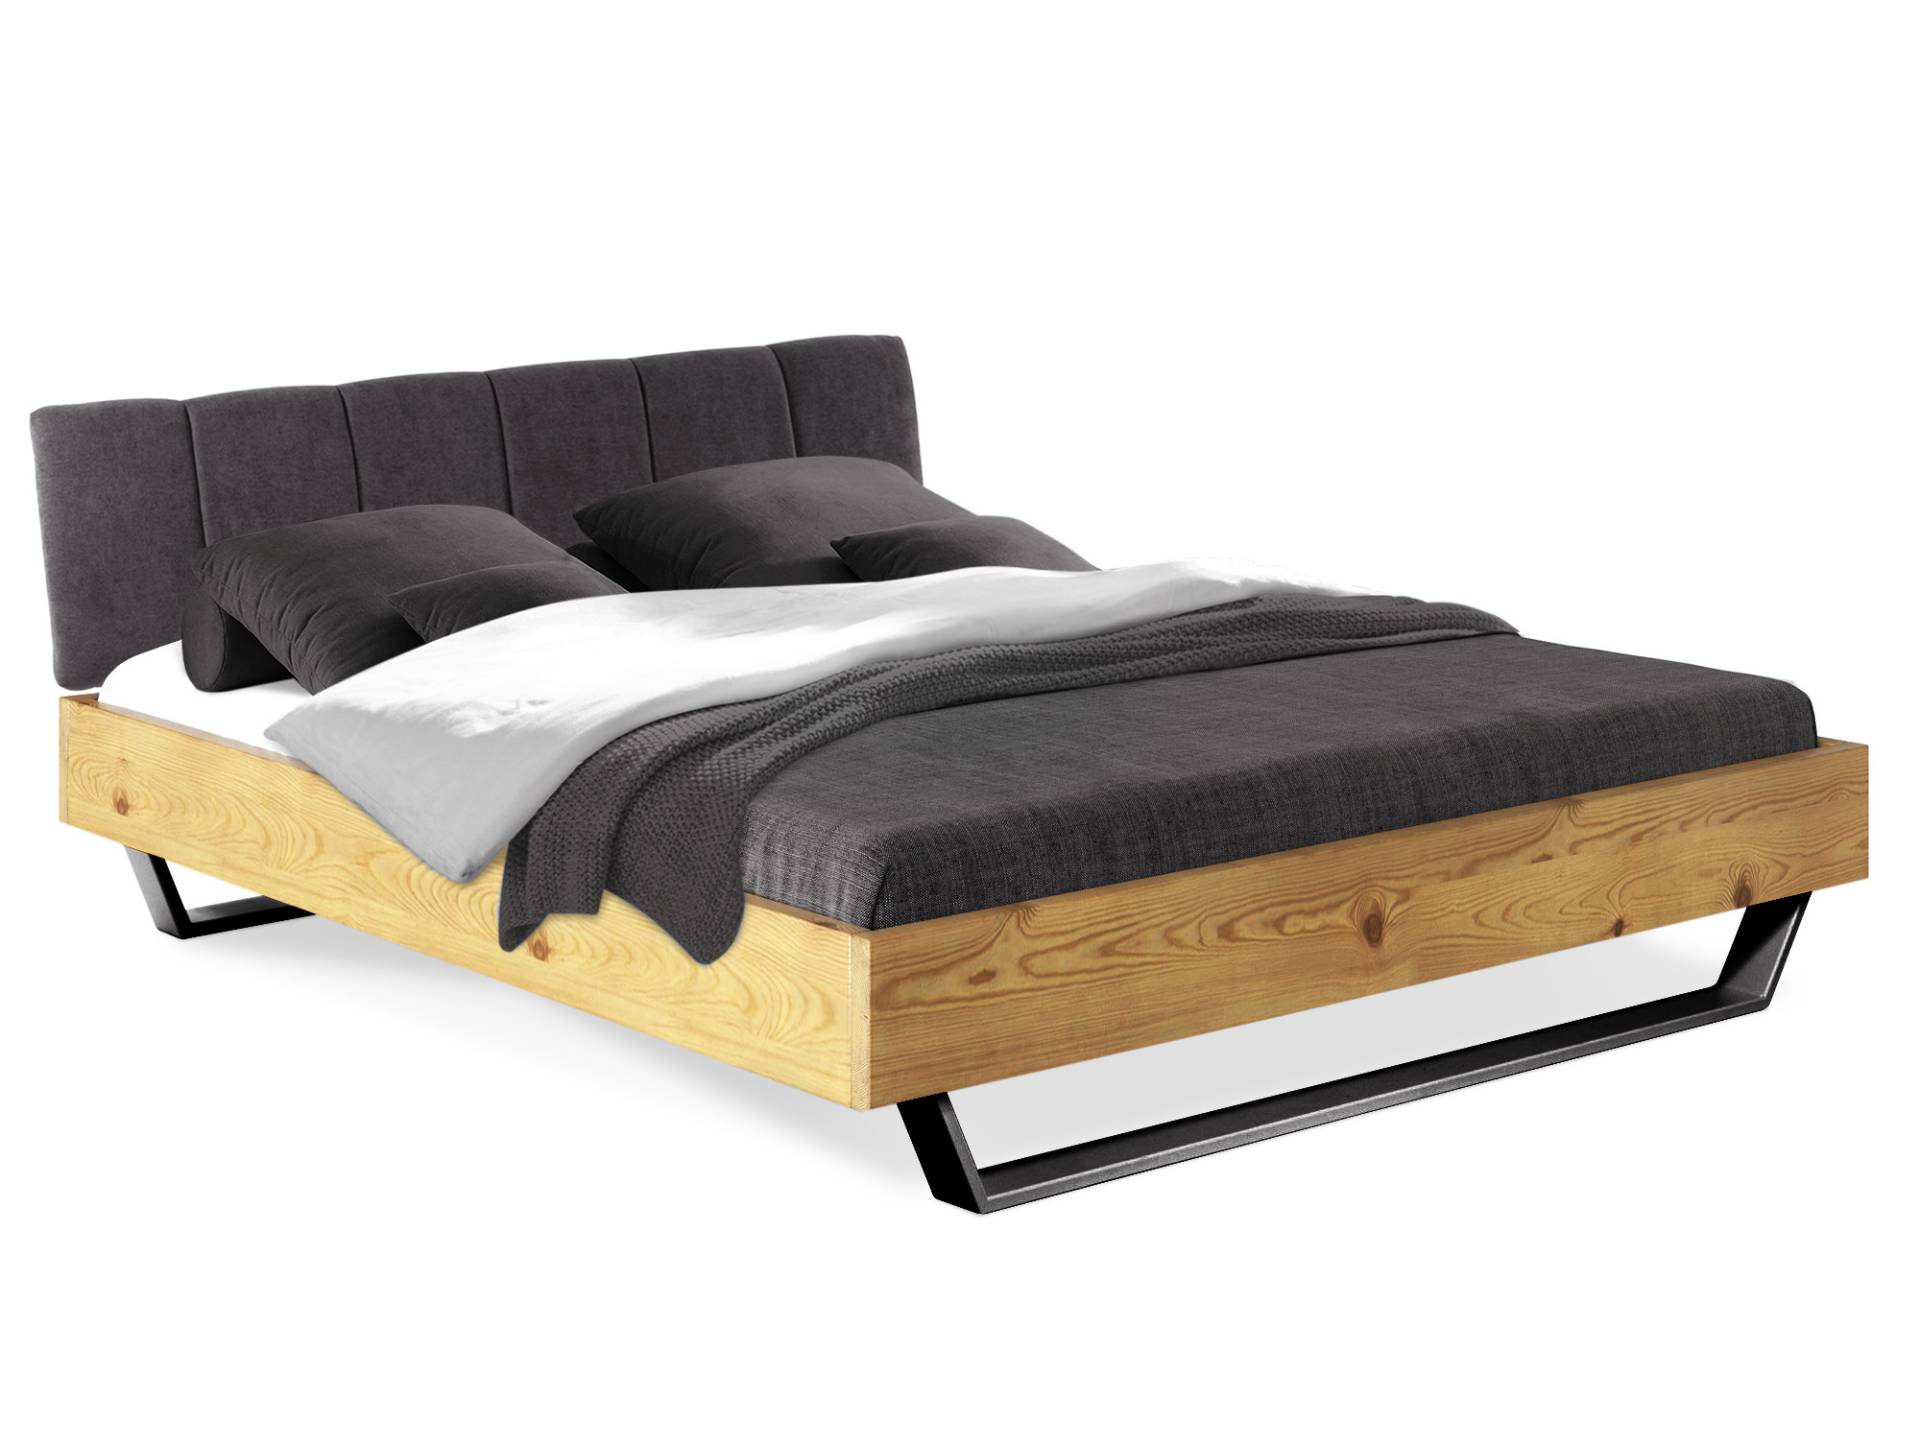 CURBY Kufenbett mit Polster-Kopfteil, Material Massivholz, rustikale Altholzoptik, Fichte, Kufen schwarz von Möbel-Eins